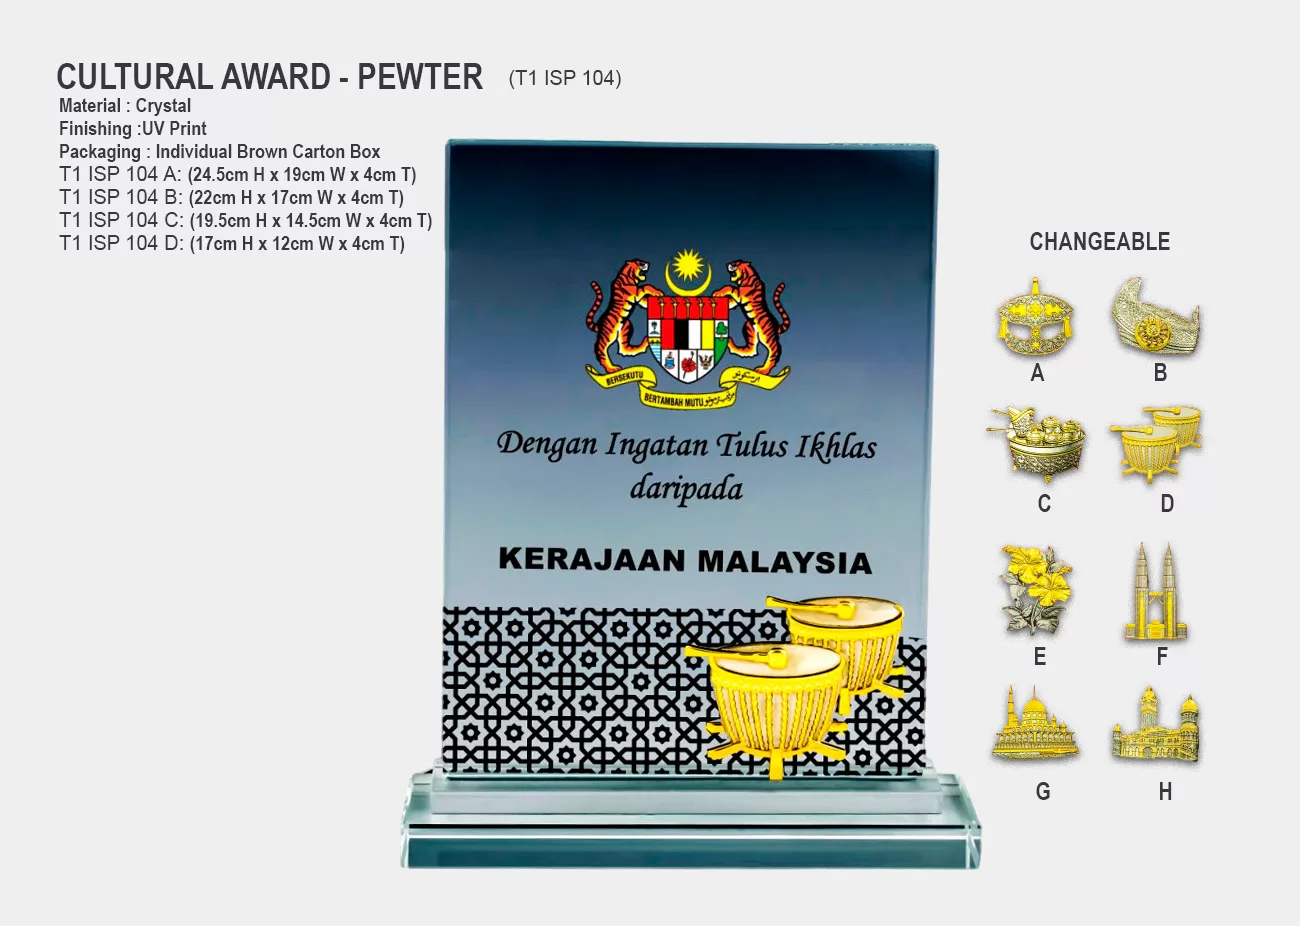 plaque awards